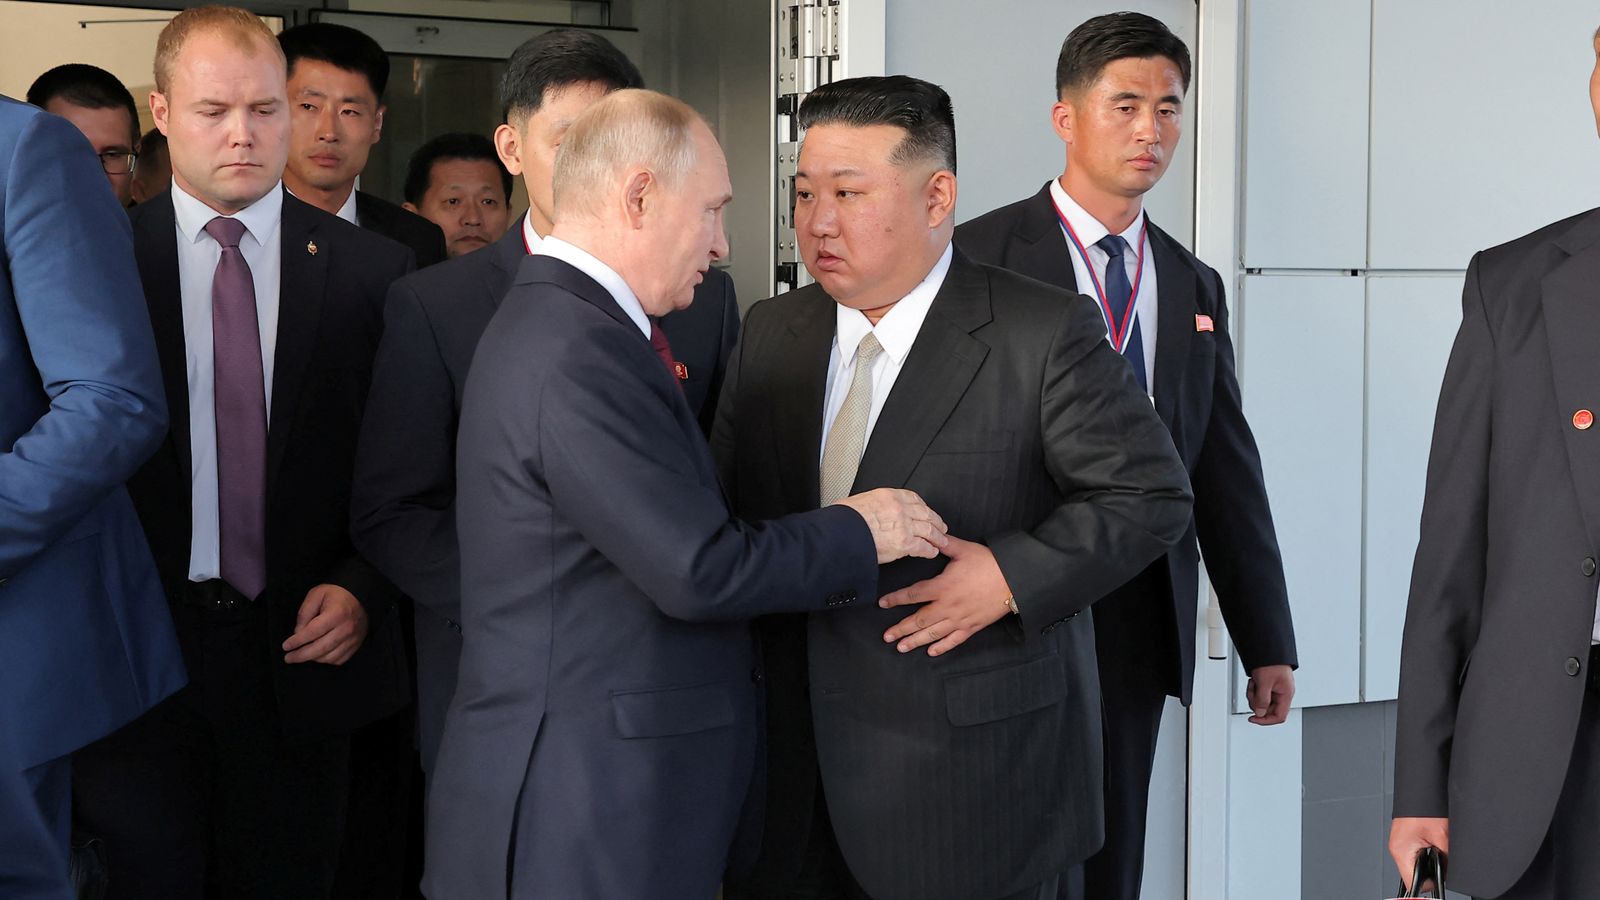 ウラジーミル・プーチン大統領、金正恩氏の北朝鮮訪問の招待を「ありがたく受け入れる」 世界のニュース